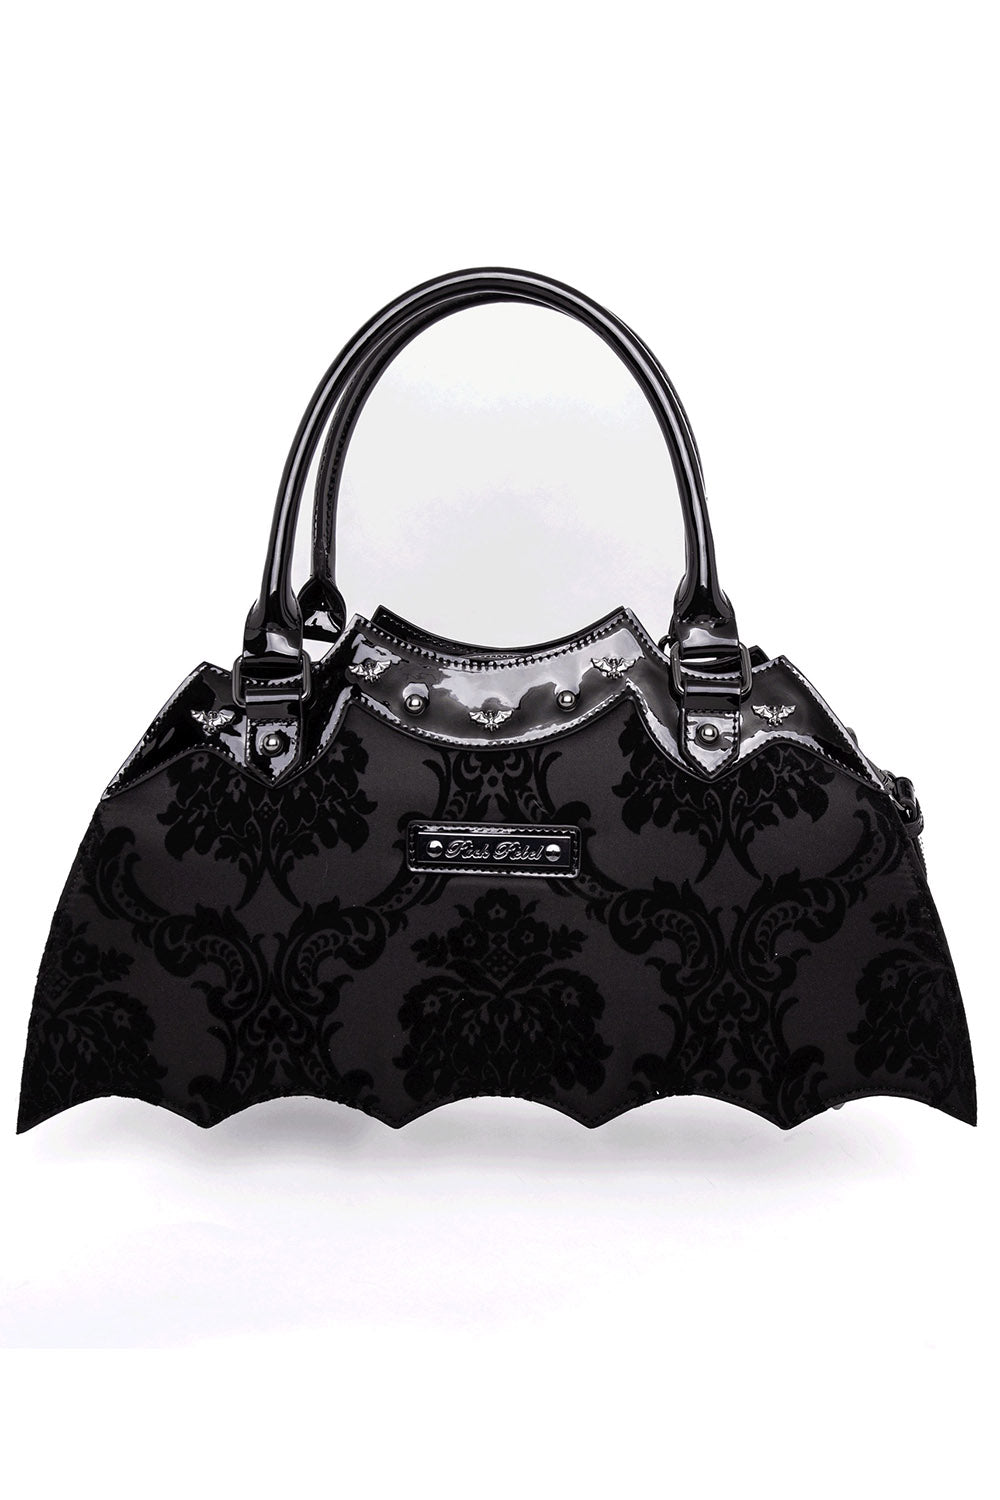 gothic bat shaped handbag